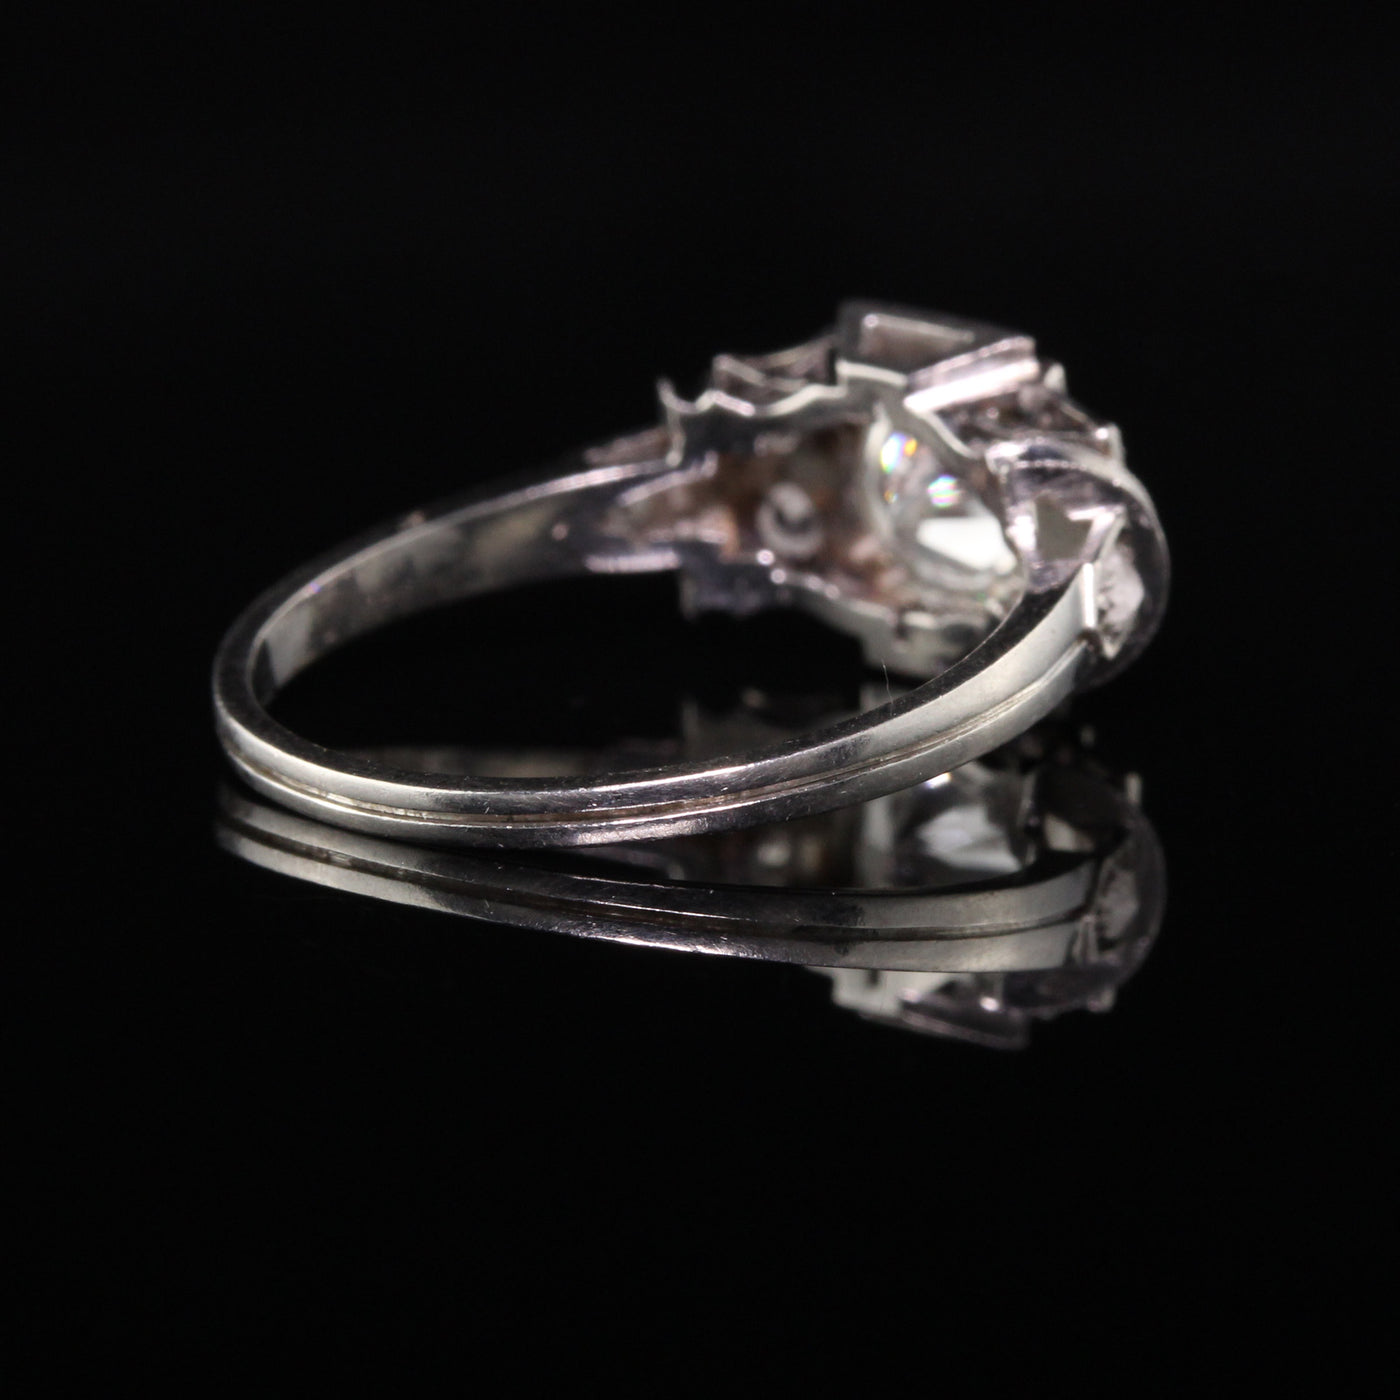 Antique Art Deco Platinum Old European Diamond Engagement Ring